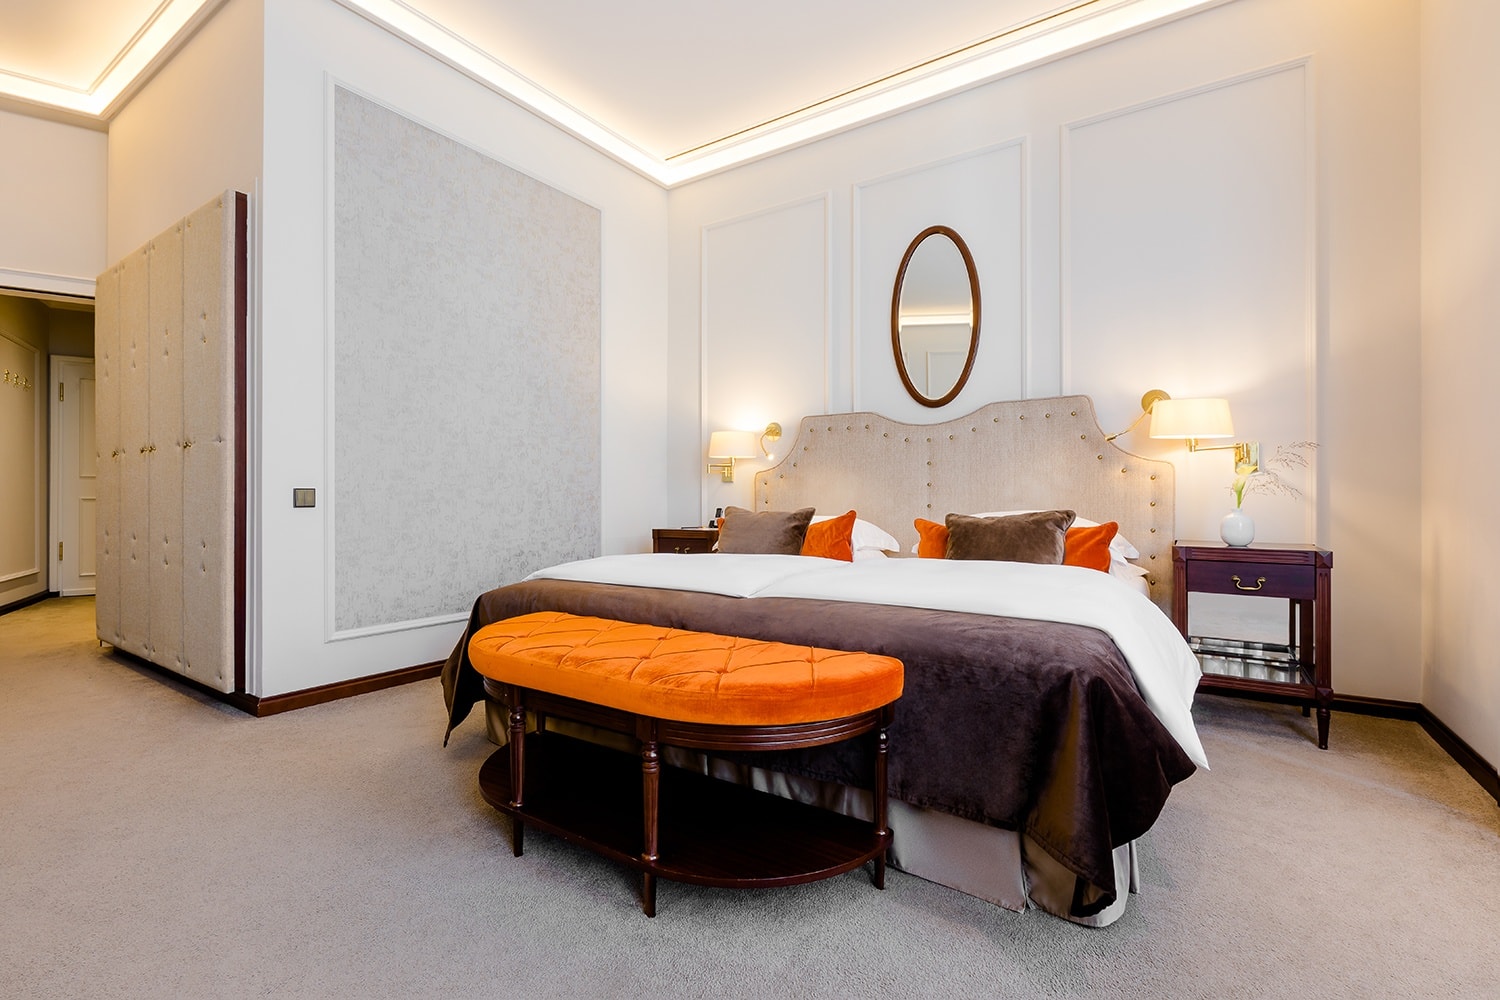 Großes Doppelbett steht auf einem Teppichboden vor einem ovalen Spiegel und zwischen zwei Nachttischen